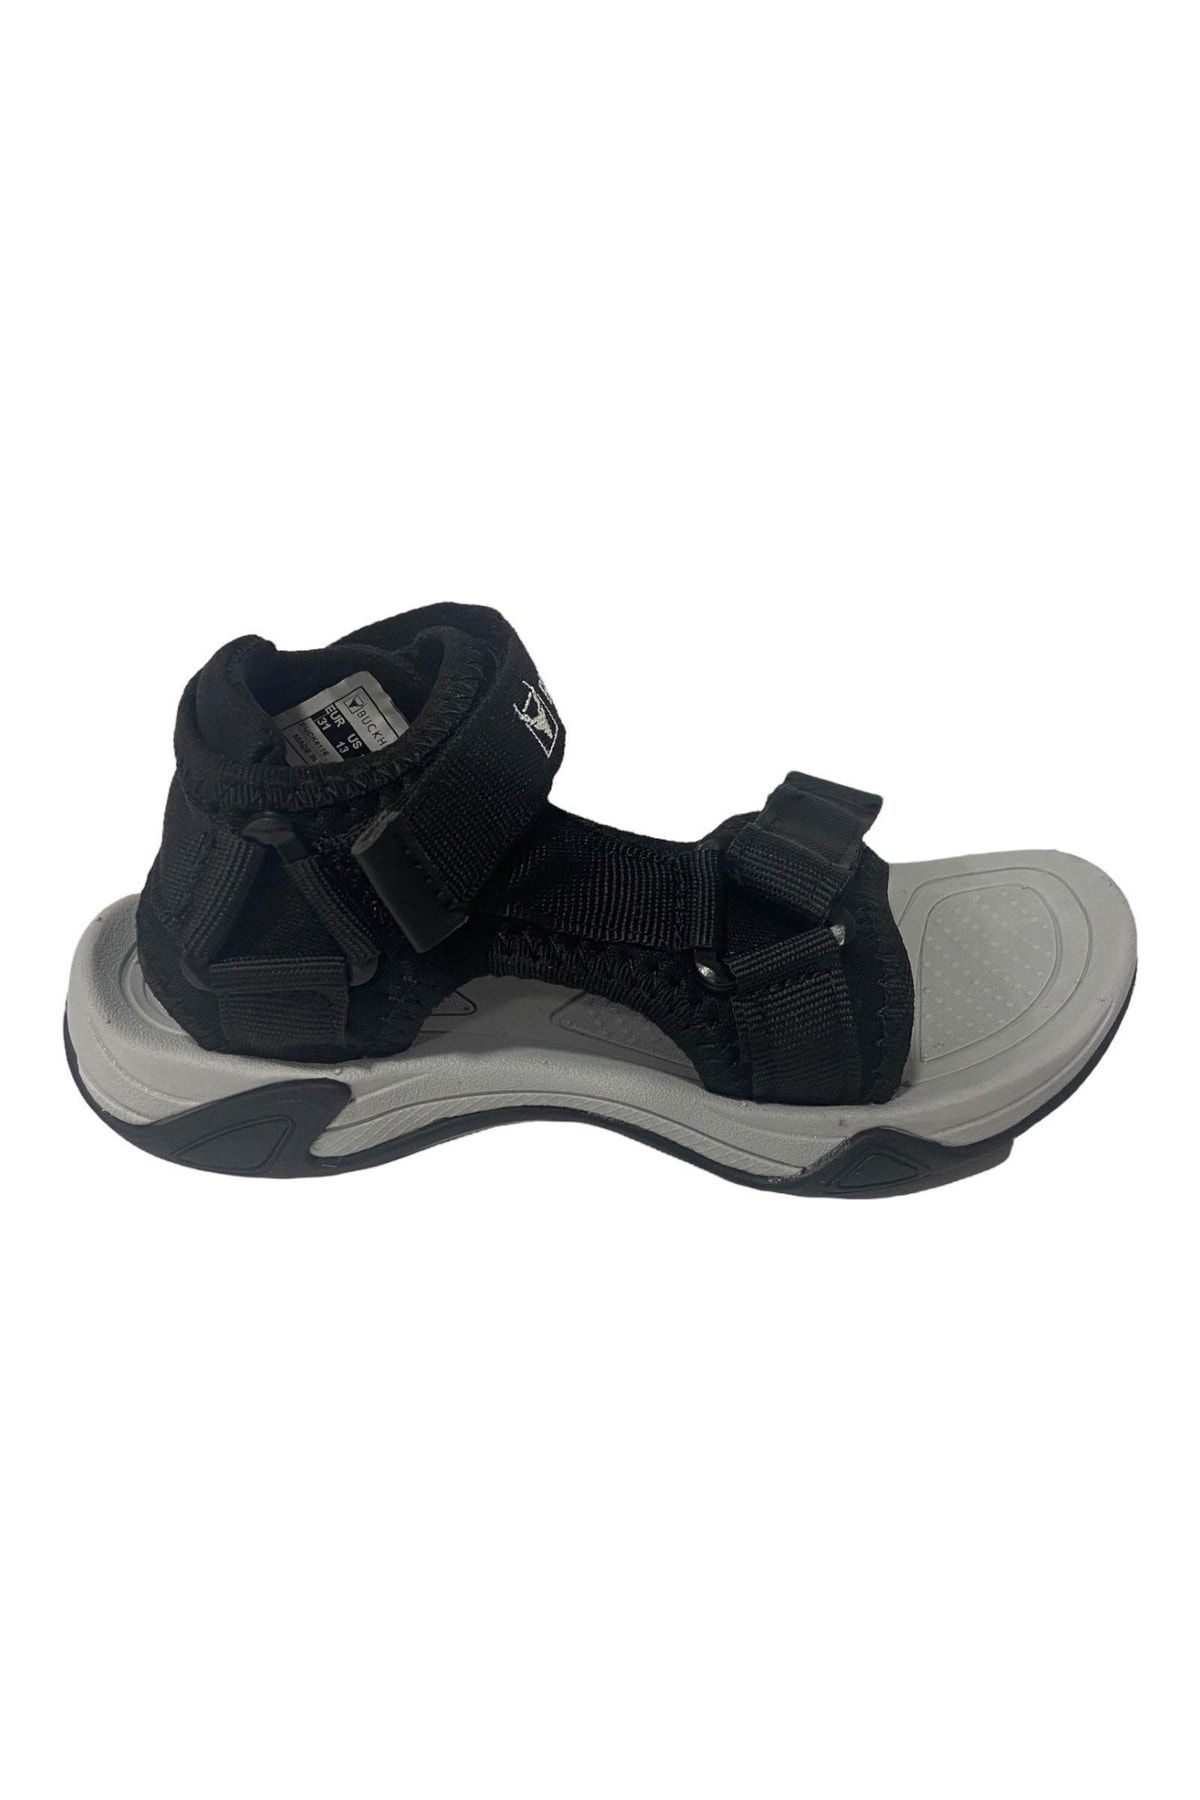 BUCKHEAD Sandalet Siyah